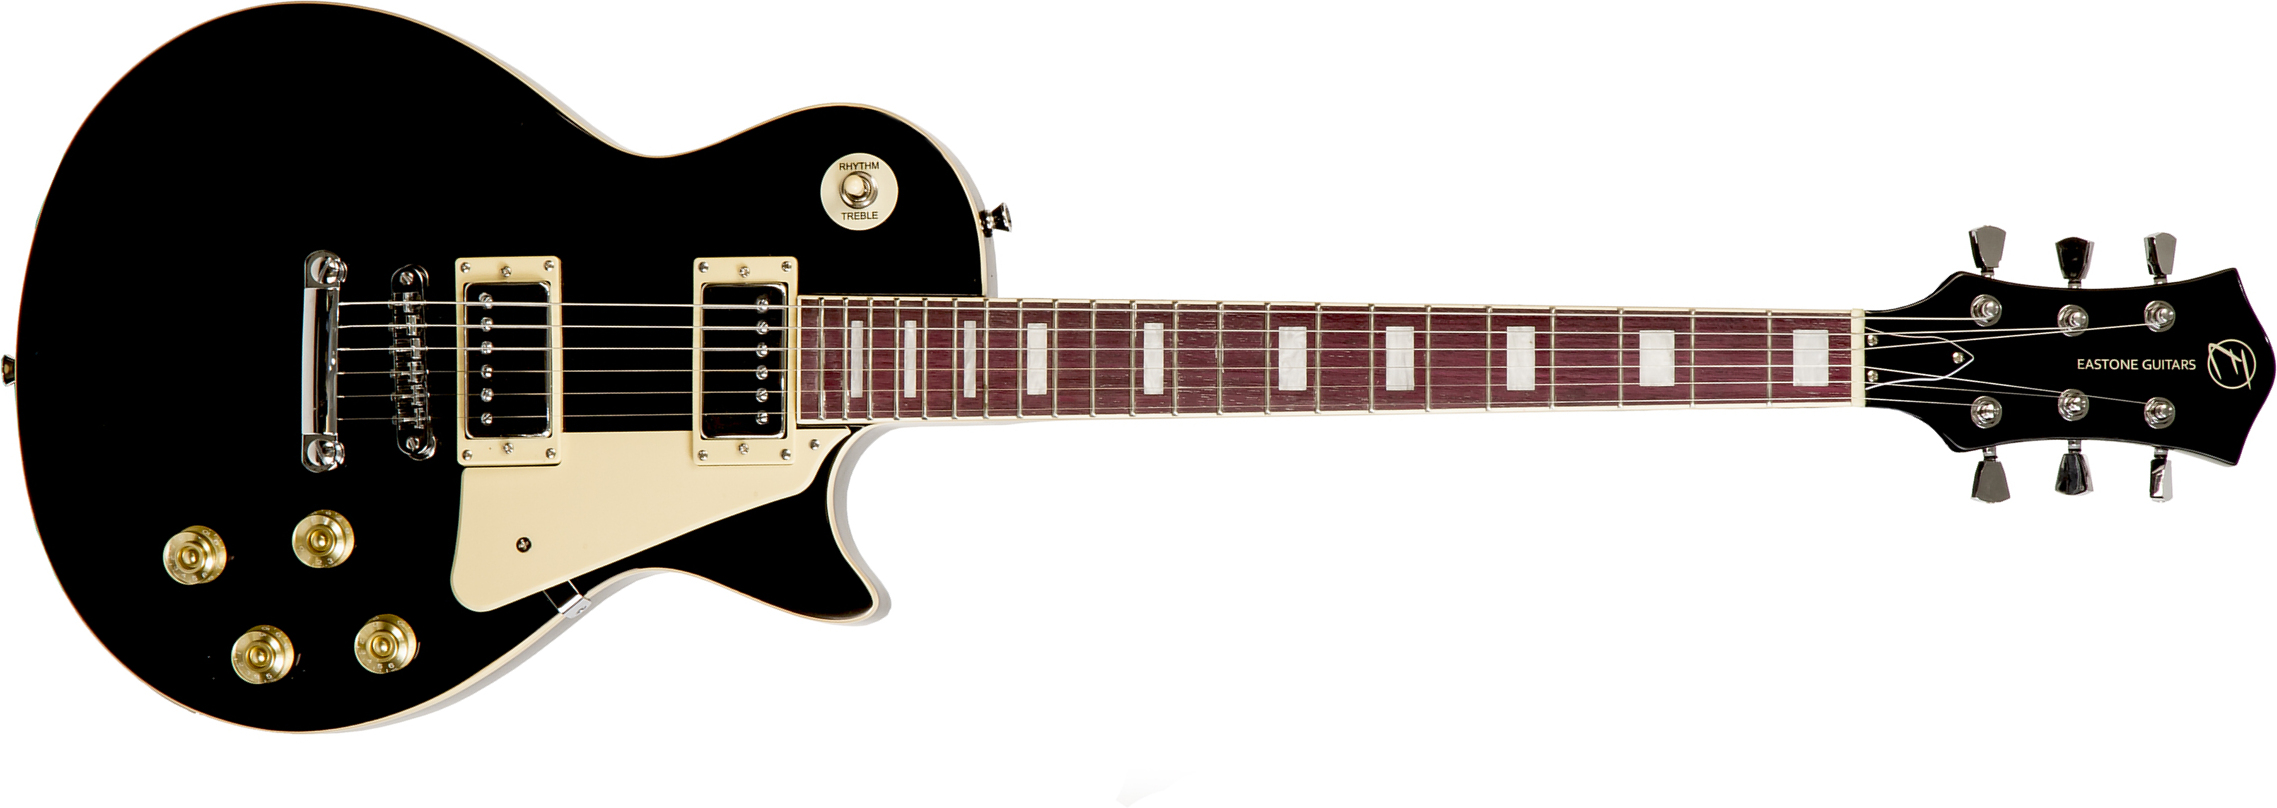 Eastone Lp100 Blk Hh Ht Pur - Black - Guitarra eléctrica de corte único. - Main picture